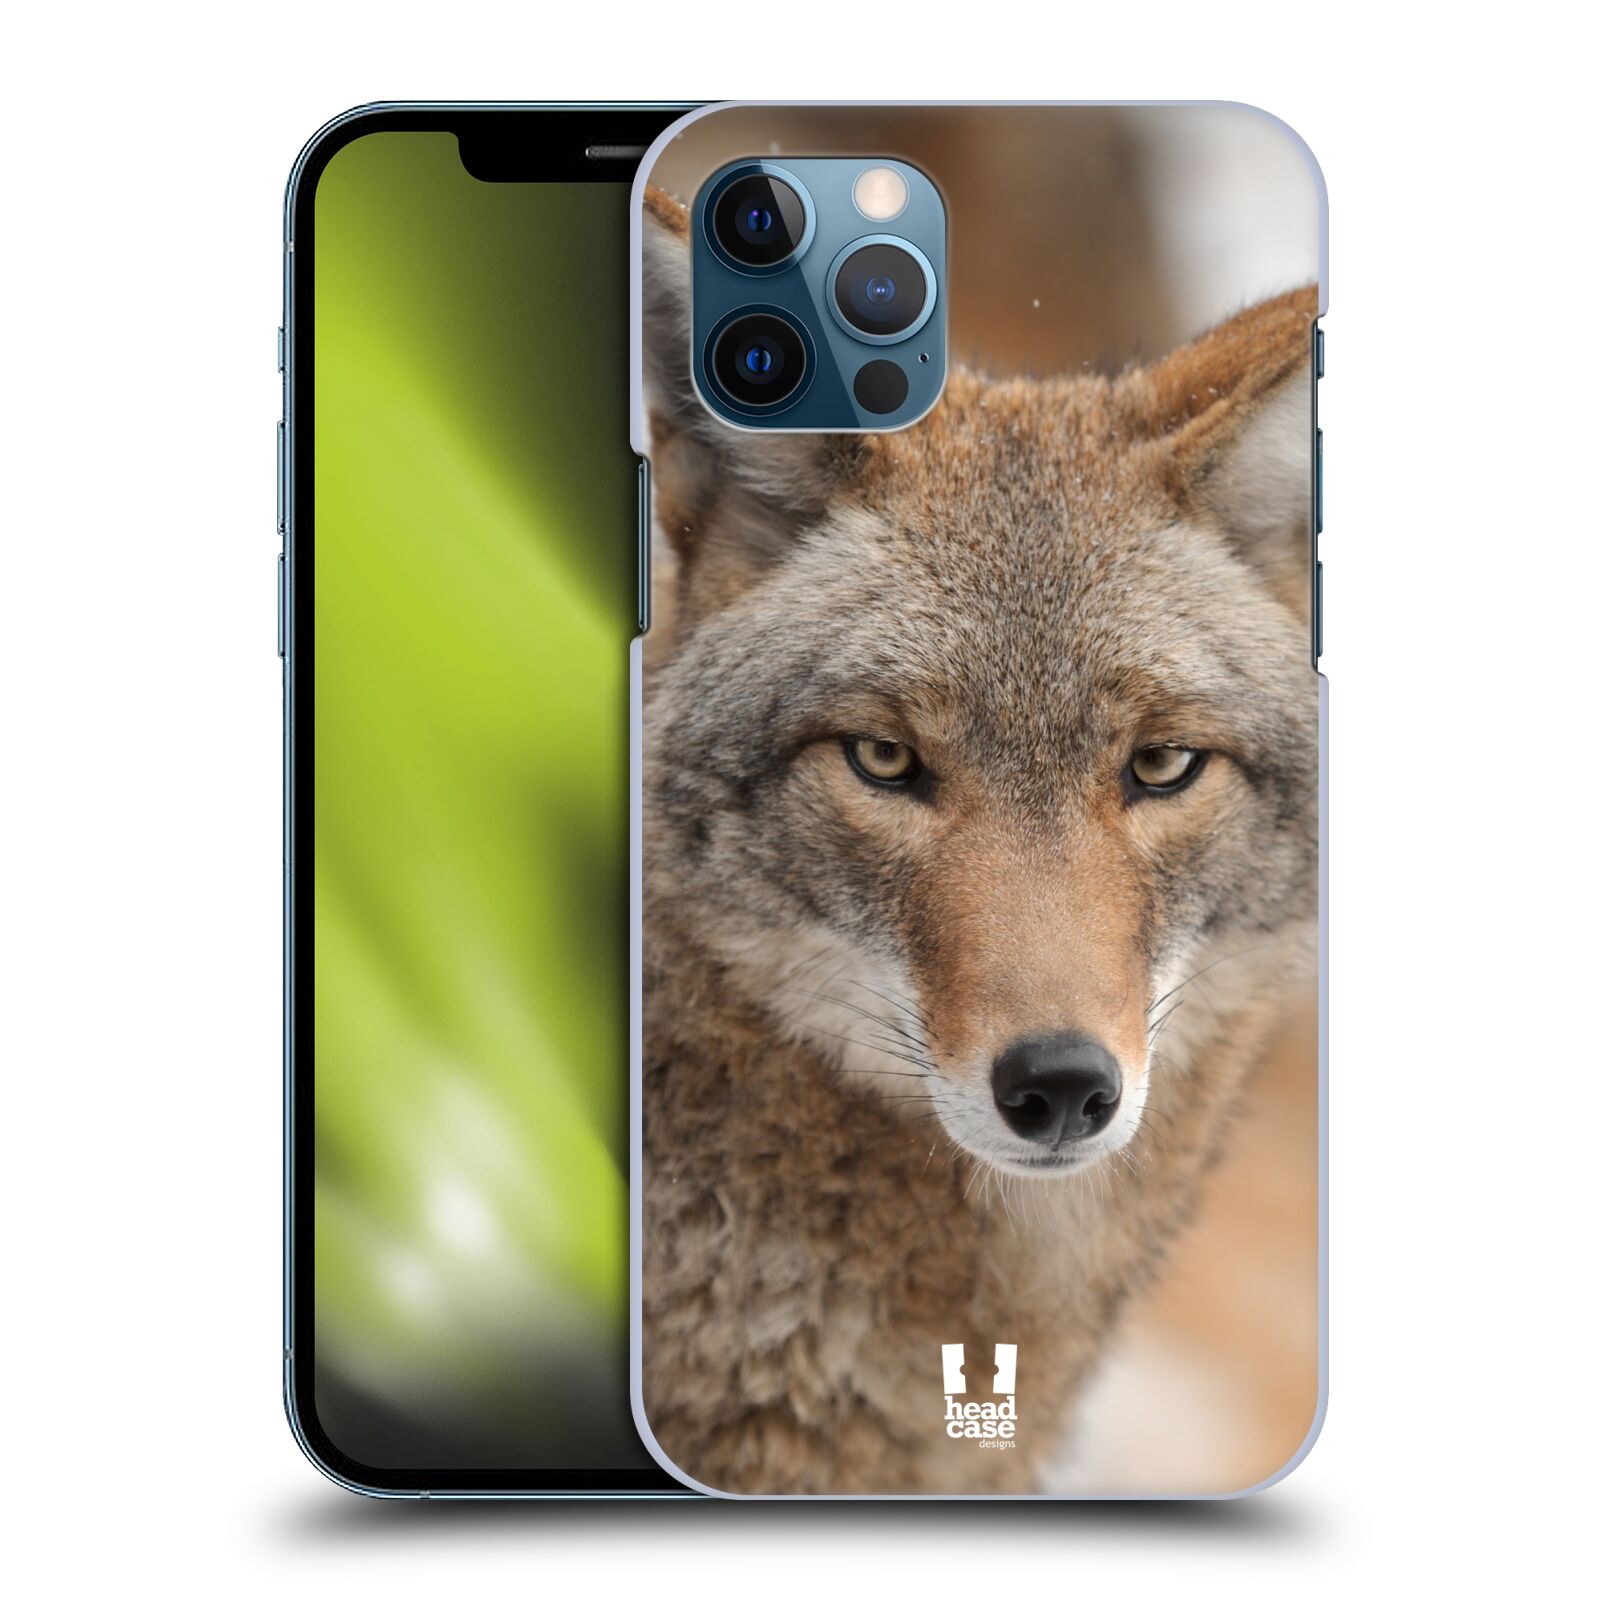 HEAD CASE plastový obal na mobil Apple Iphone 12 / Iphone 12 PRO vzor slavná zvířata foto kojot